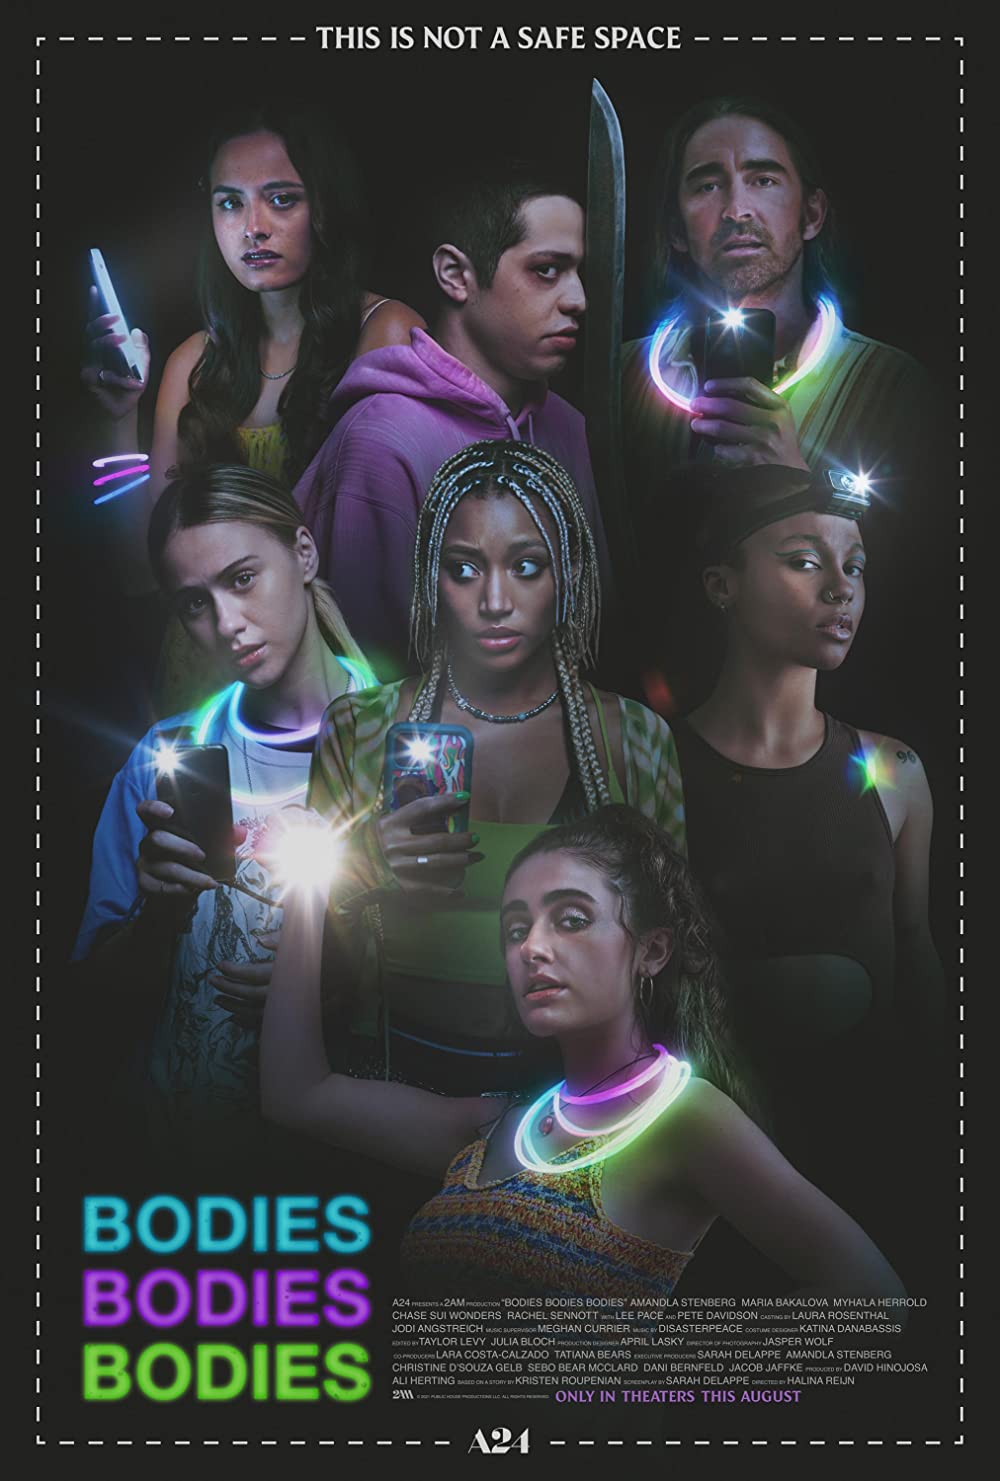 ดูหนังออนไลน์ฟรี Bodies Bodies Bodies (2022) เพื่อนซี้ ปาร์ตี้ หนีตาย หนังเต็มเรื่อง หนังมาสเตอร์ ดูหนังHD ดูหนังออนไลน์ ดูหนังใหม่